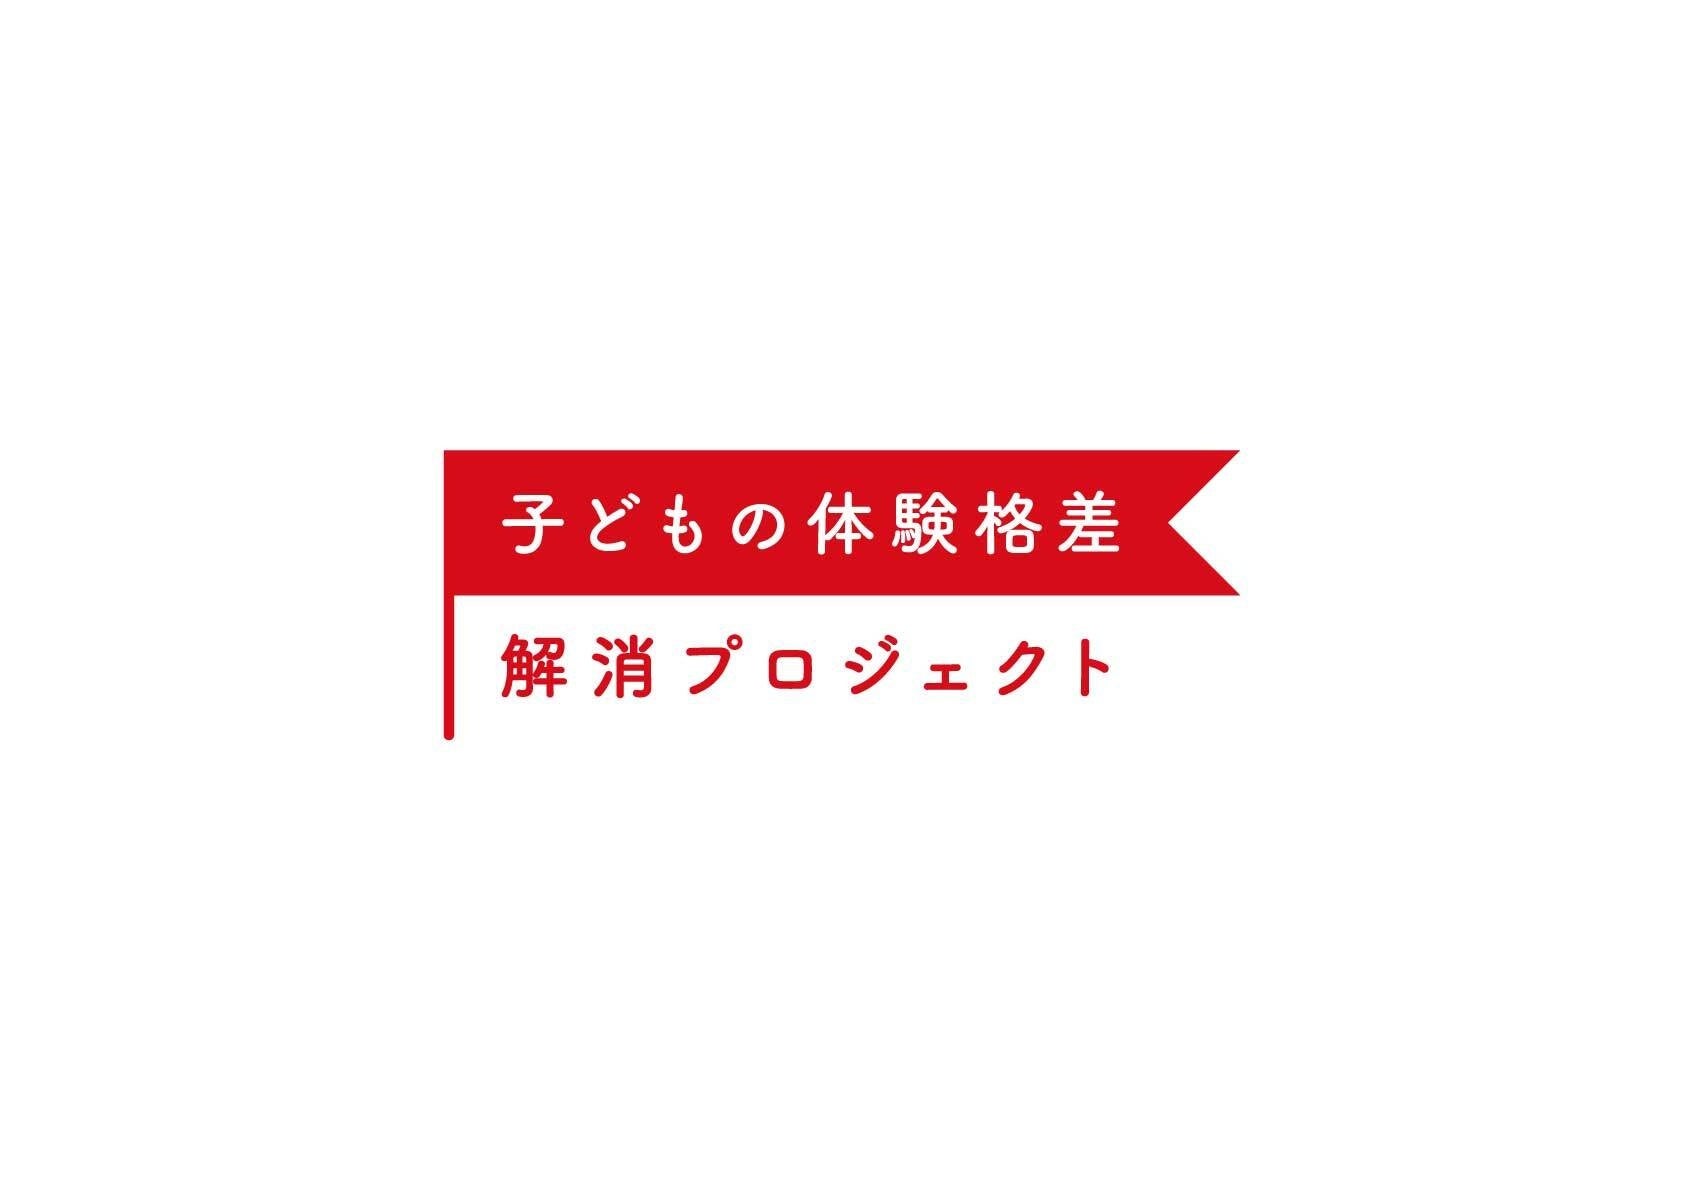 日本オリンピック委員会（JOC）とTEAM JAPAN公式旅行代理店契約を締結